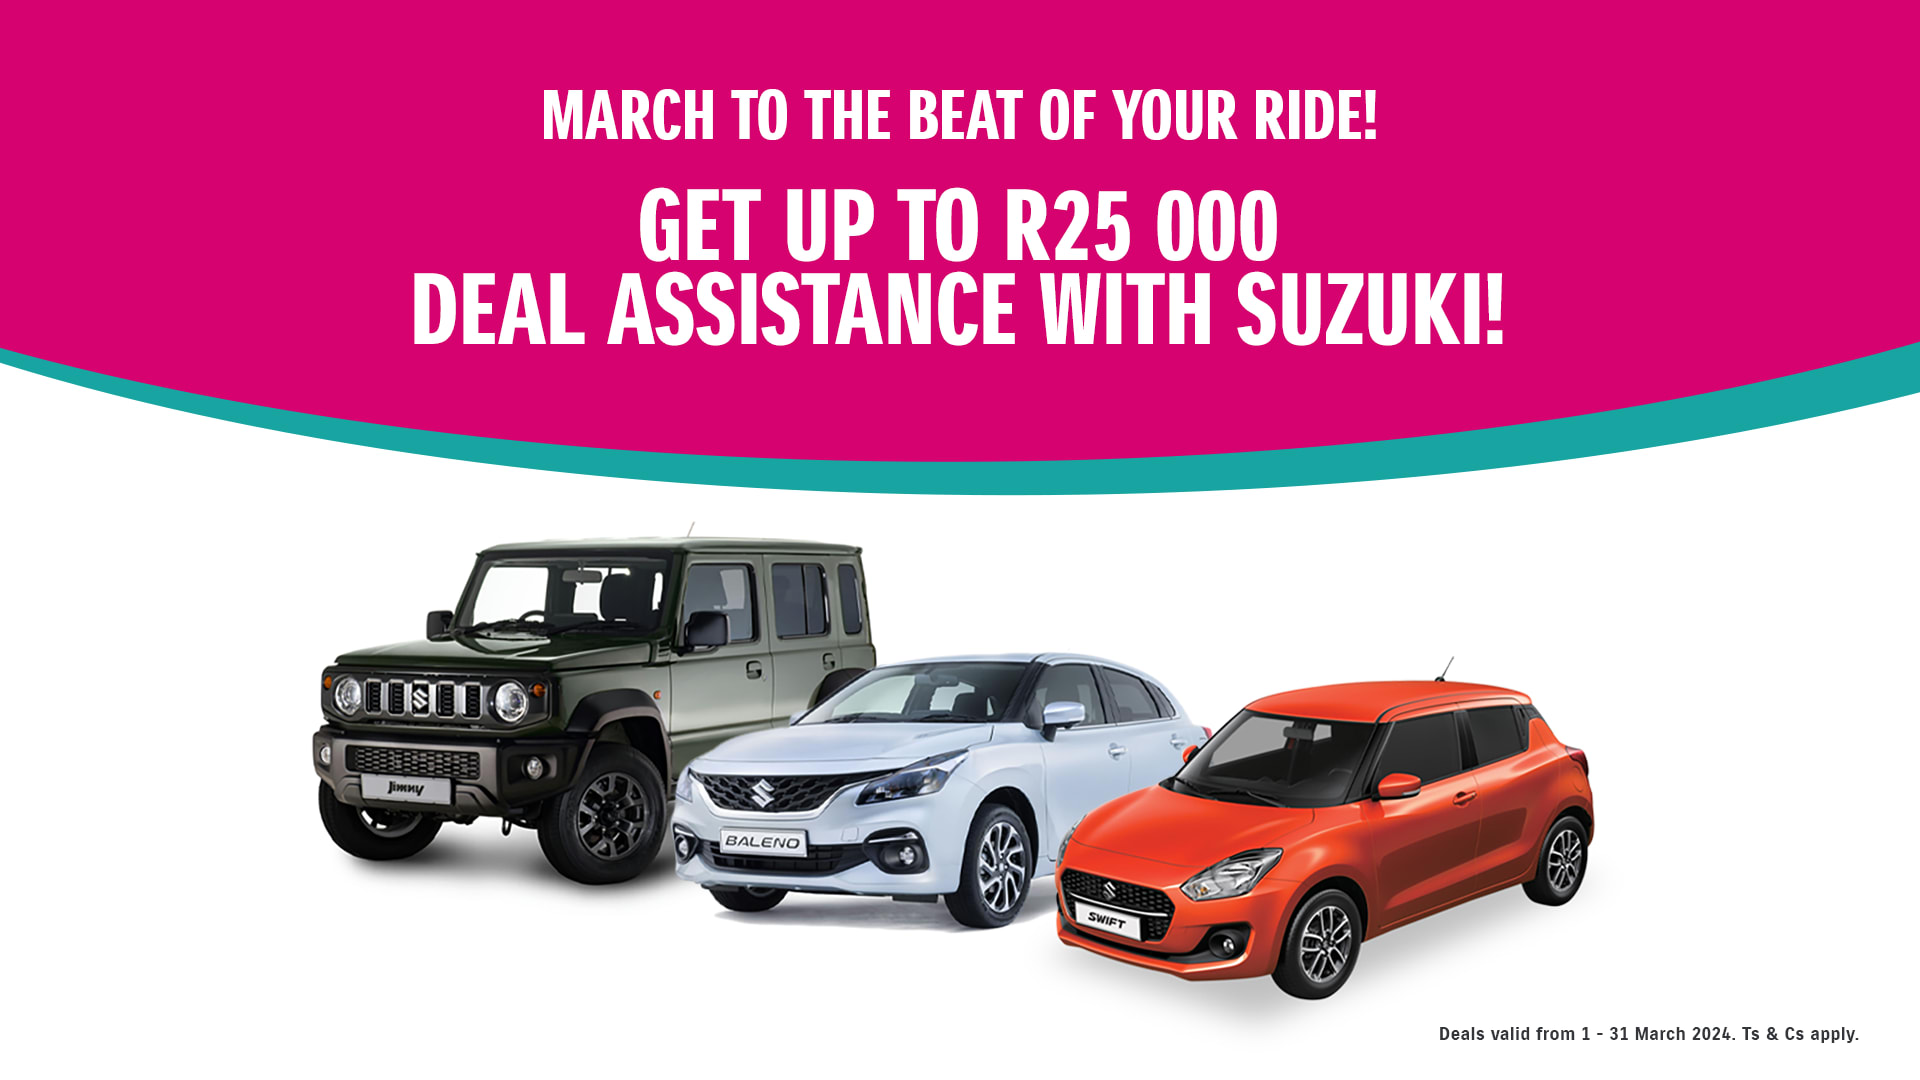 Suzuki Deal assistance